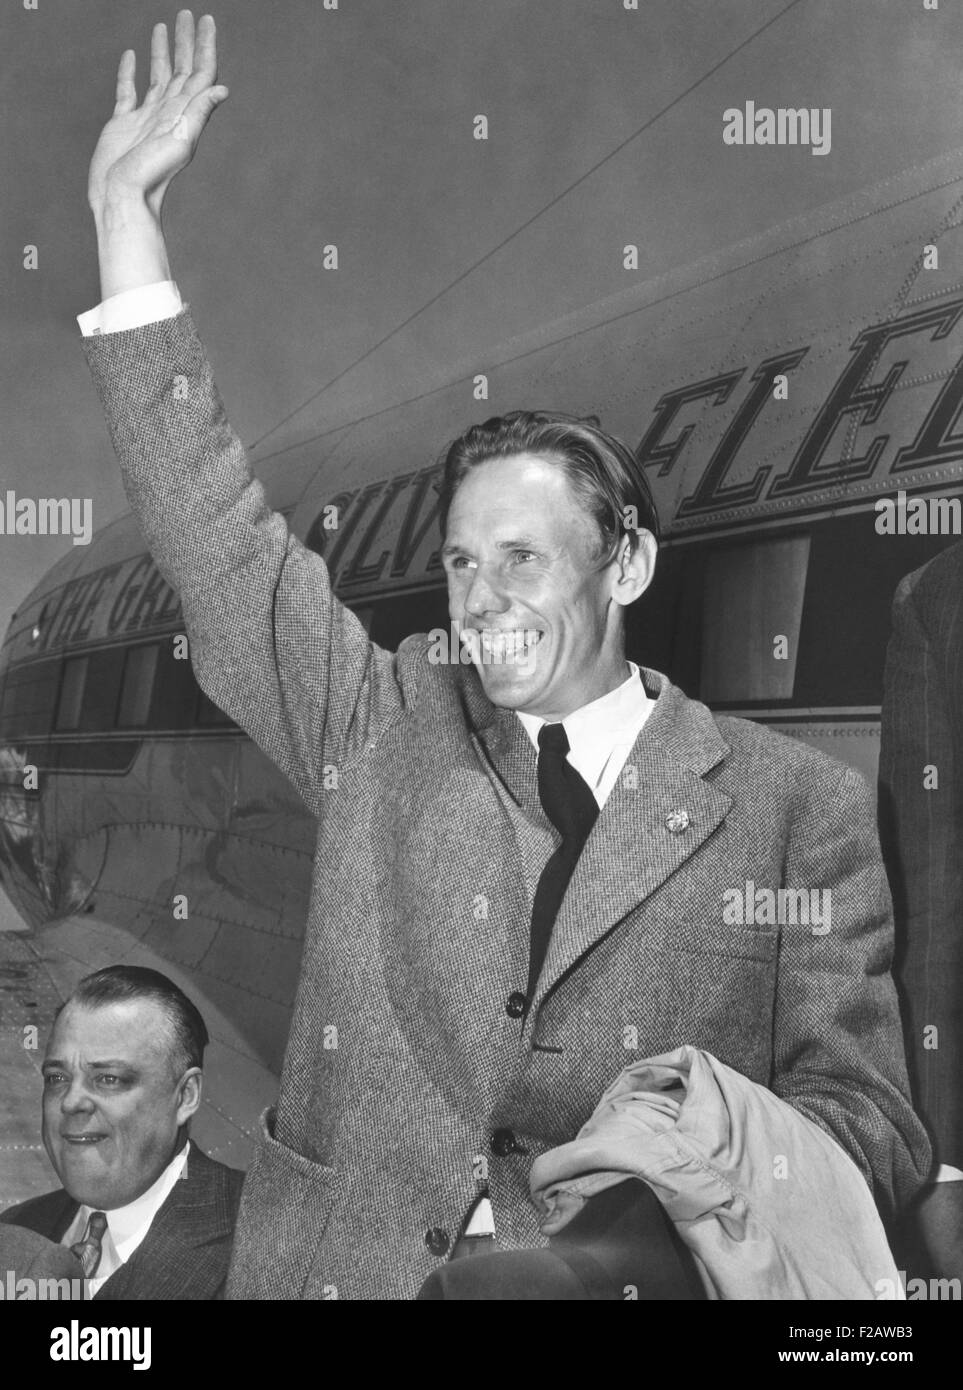 Gunder Hagg, sueco runner con siete récords mundiales, llegó al aeropuerto de LaGuardia. El 6 de junio de 1943. Él viajó desde Suecia neutral para competir en EE.UU. vía cumple. Dos años más tarde, Hagg corrió una milla en 4:01.4 segundos en Malmo, Suecia en 1945. El Registro celebrará hasta roto por Roger Bannister en Oxford en 1954. (CSU 2015 11 1442) Foto de stock